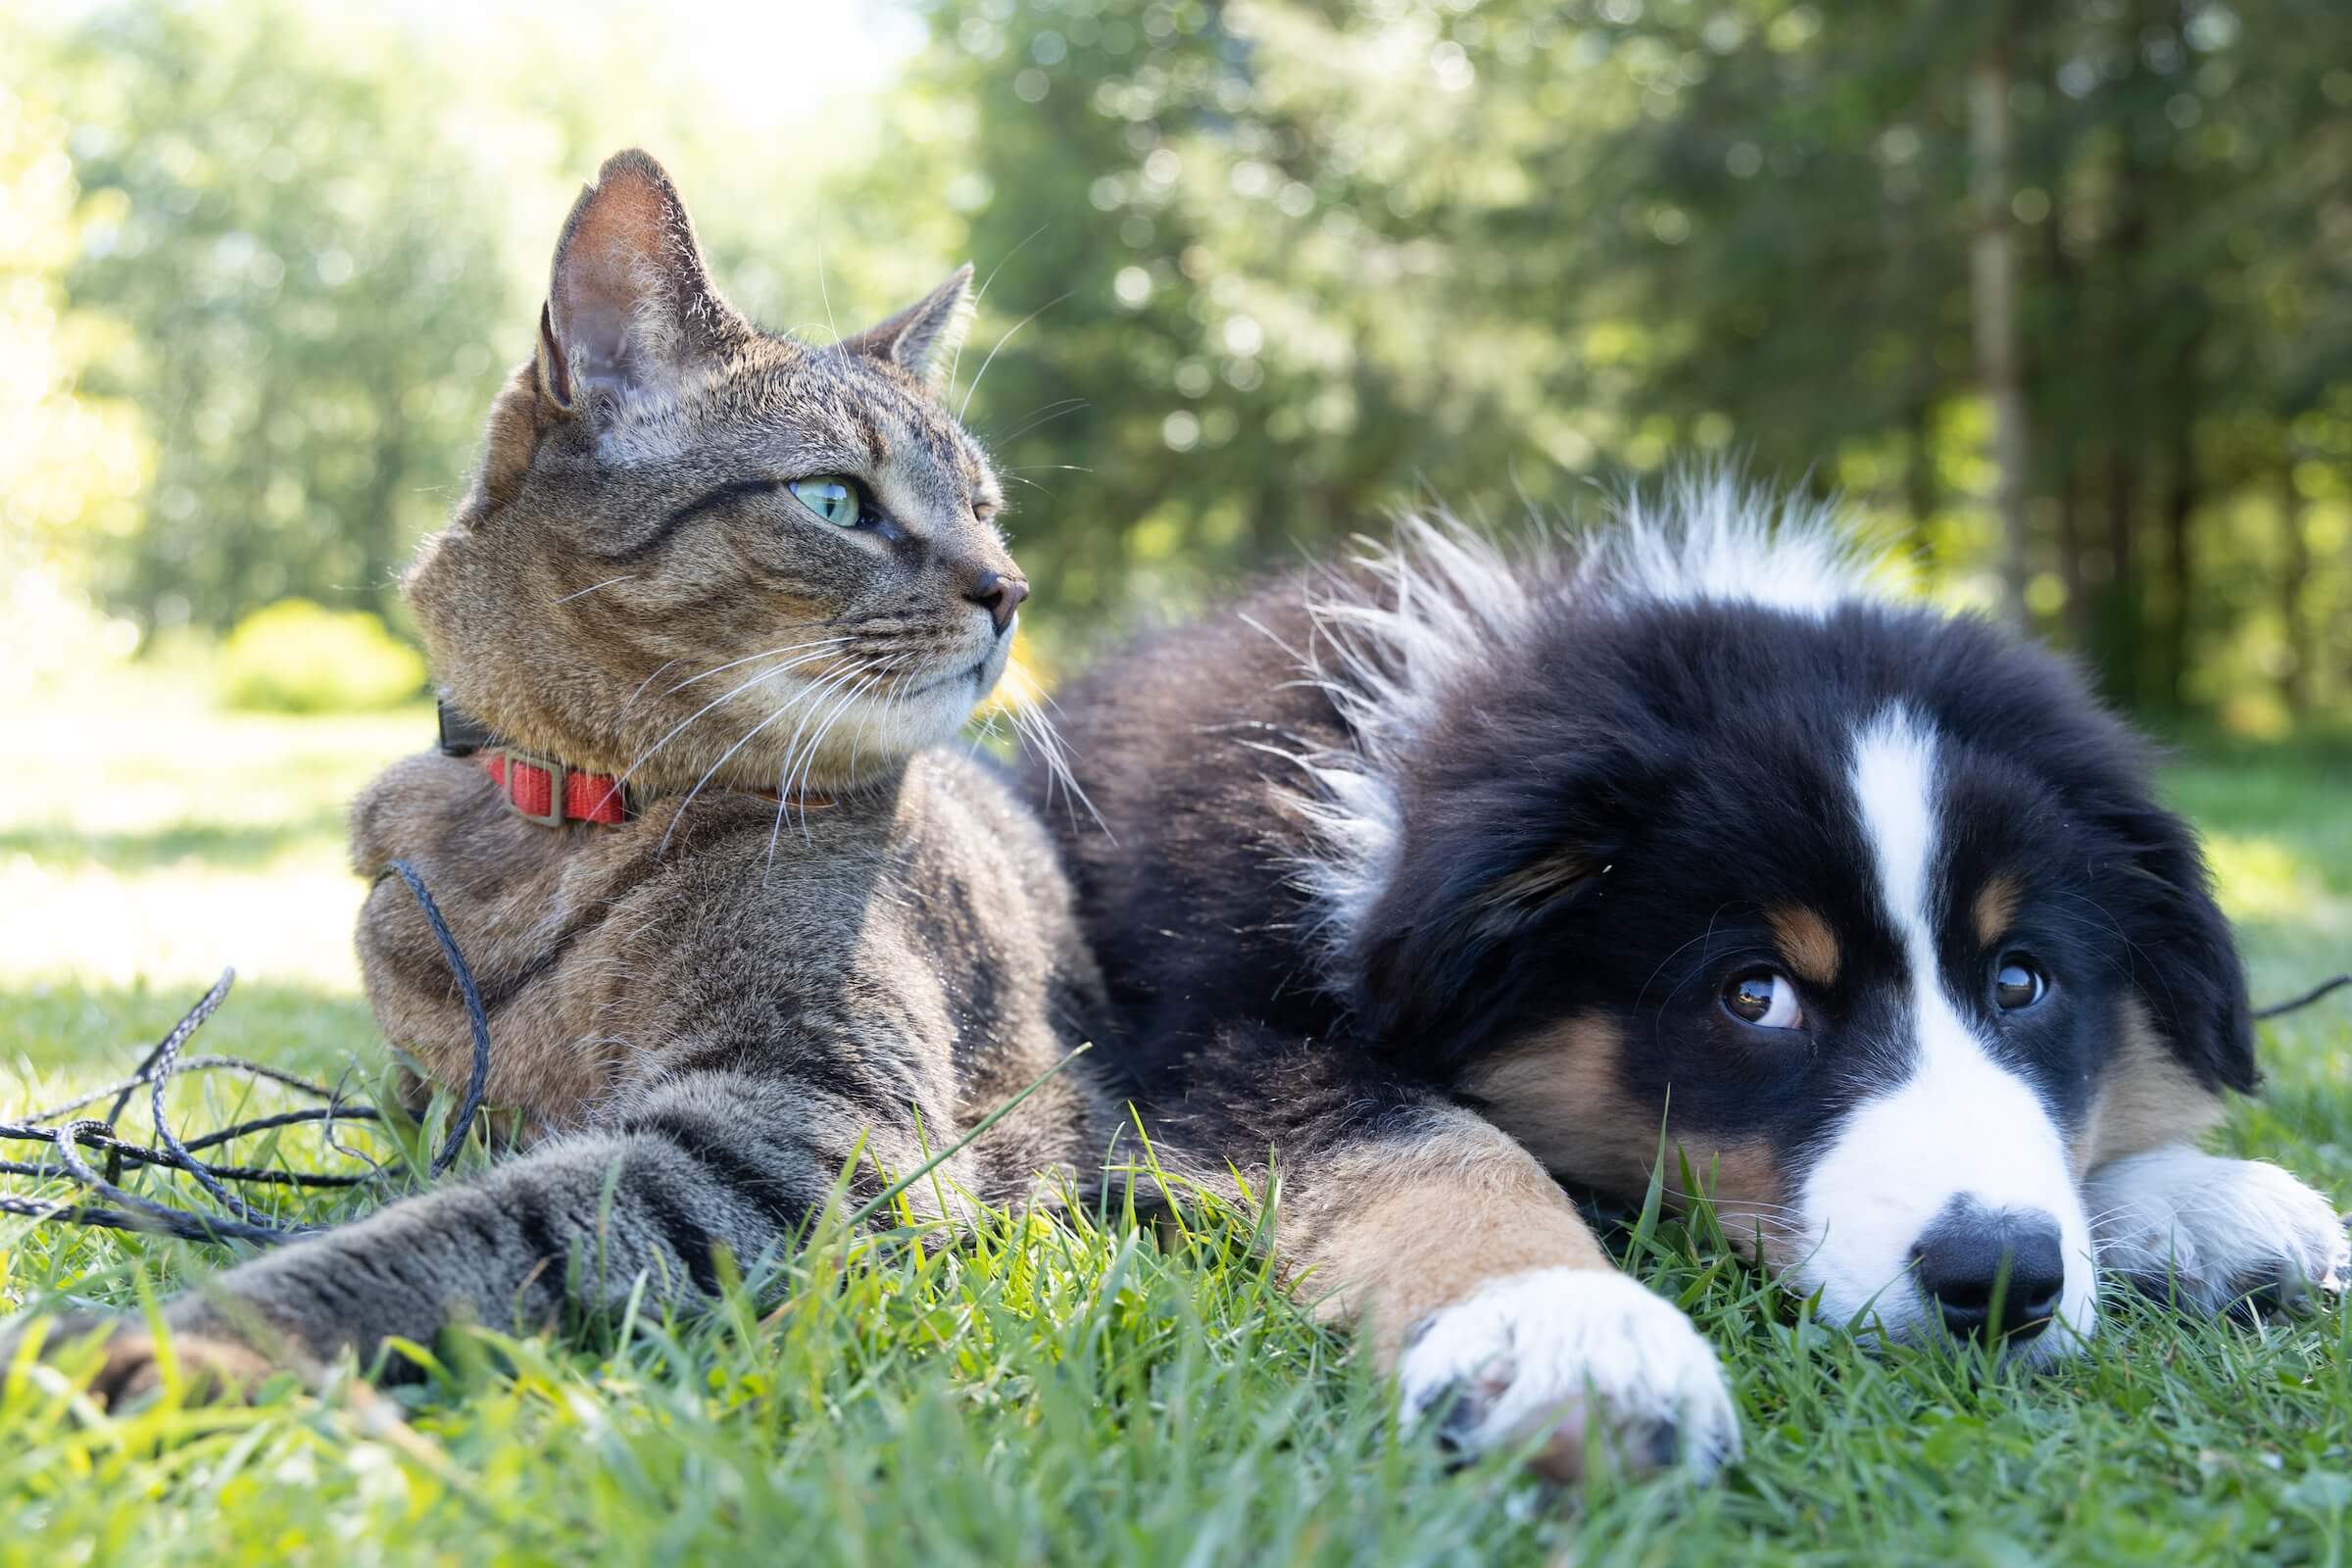 Is Pet Insurance Worth It?